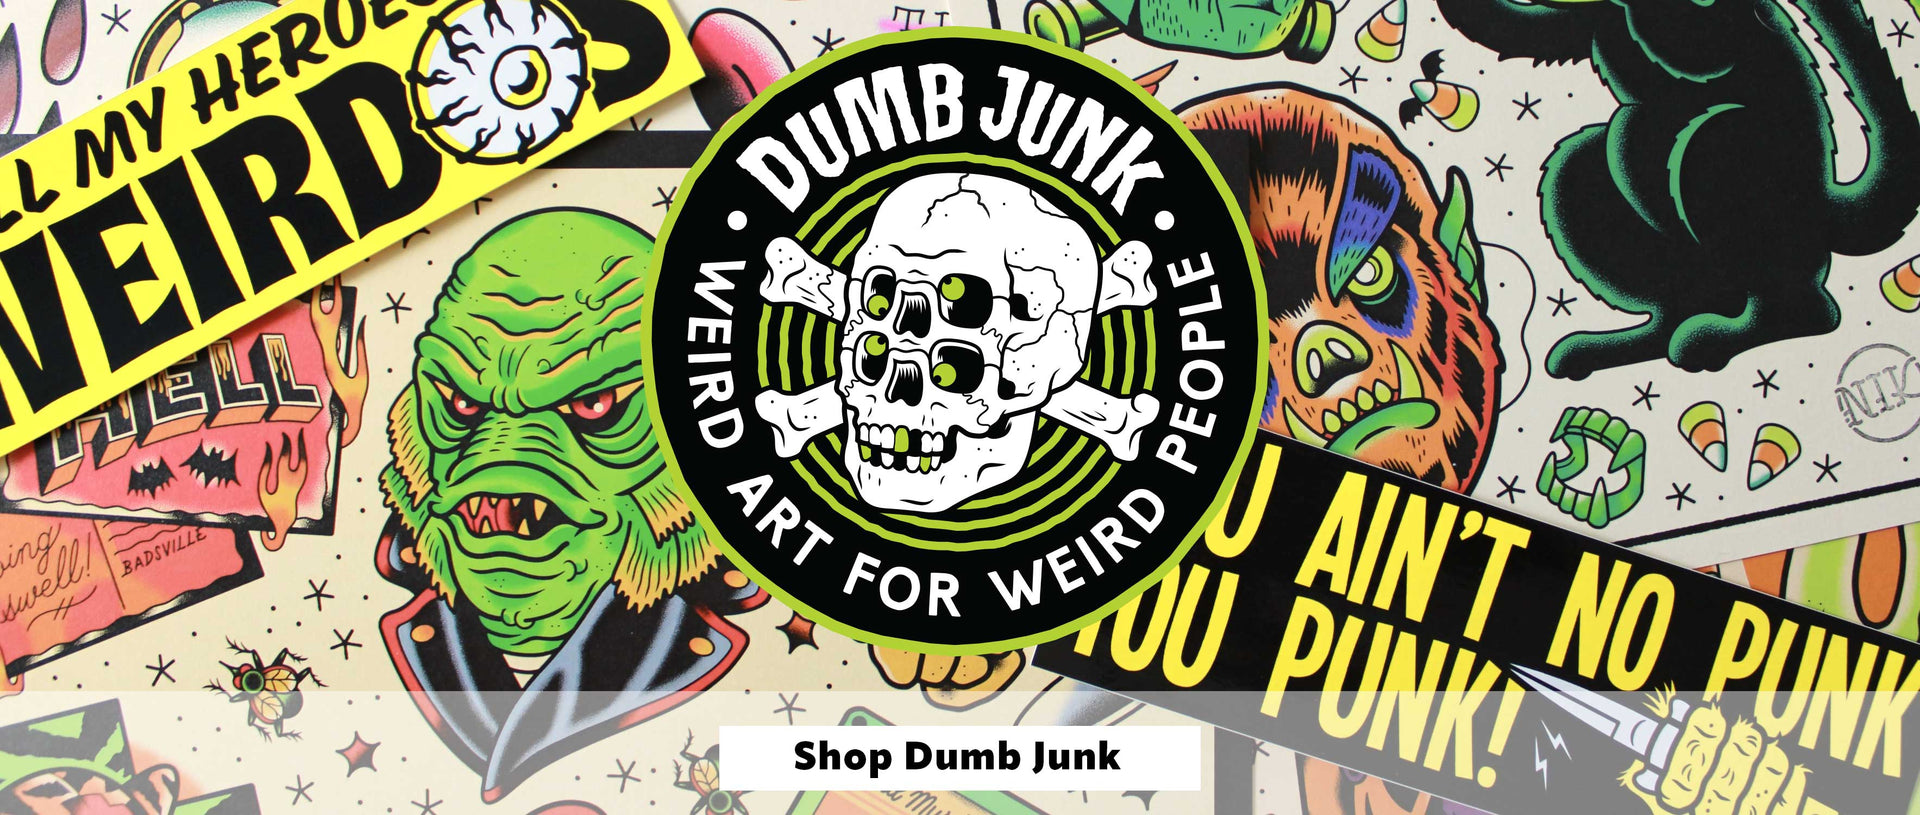 Shop Dumb Junk